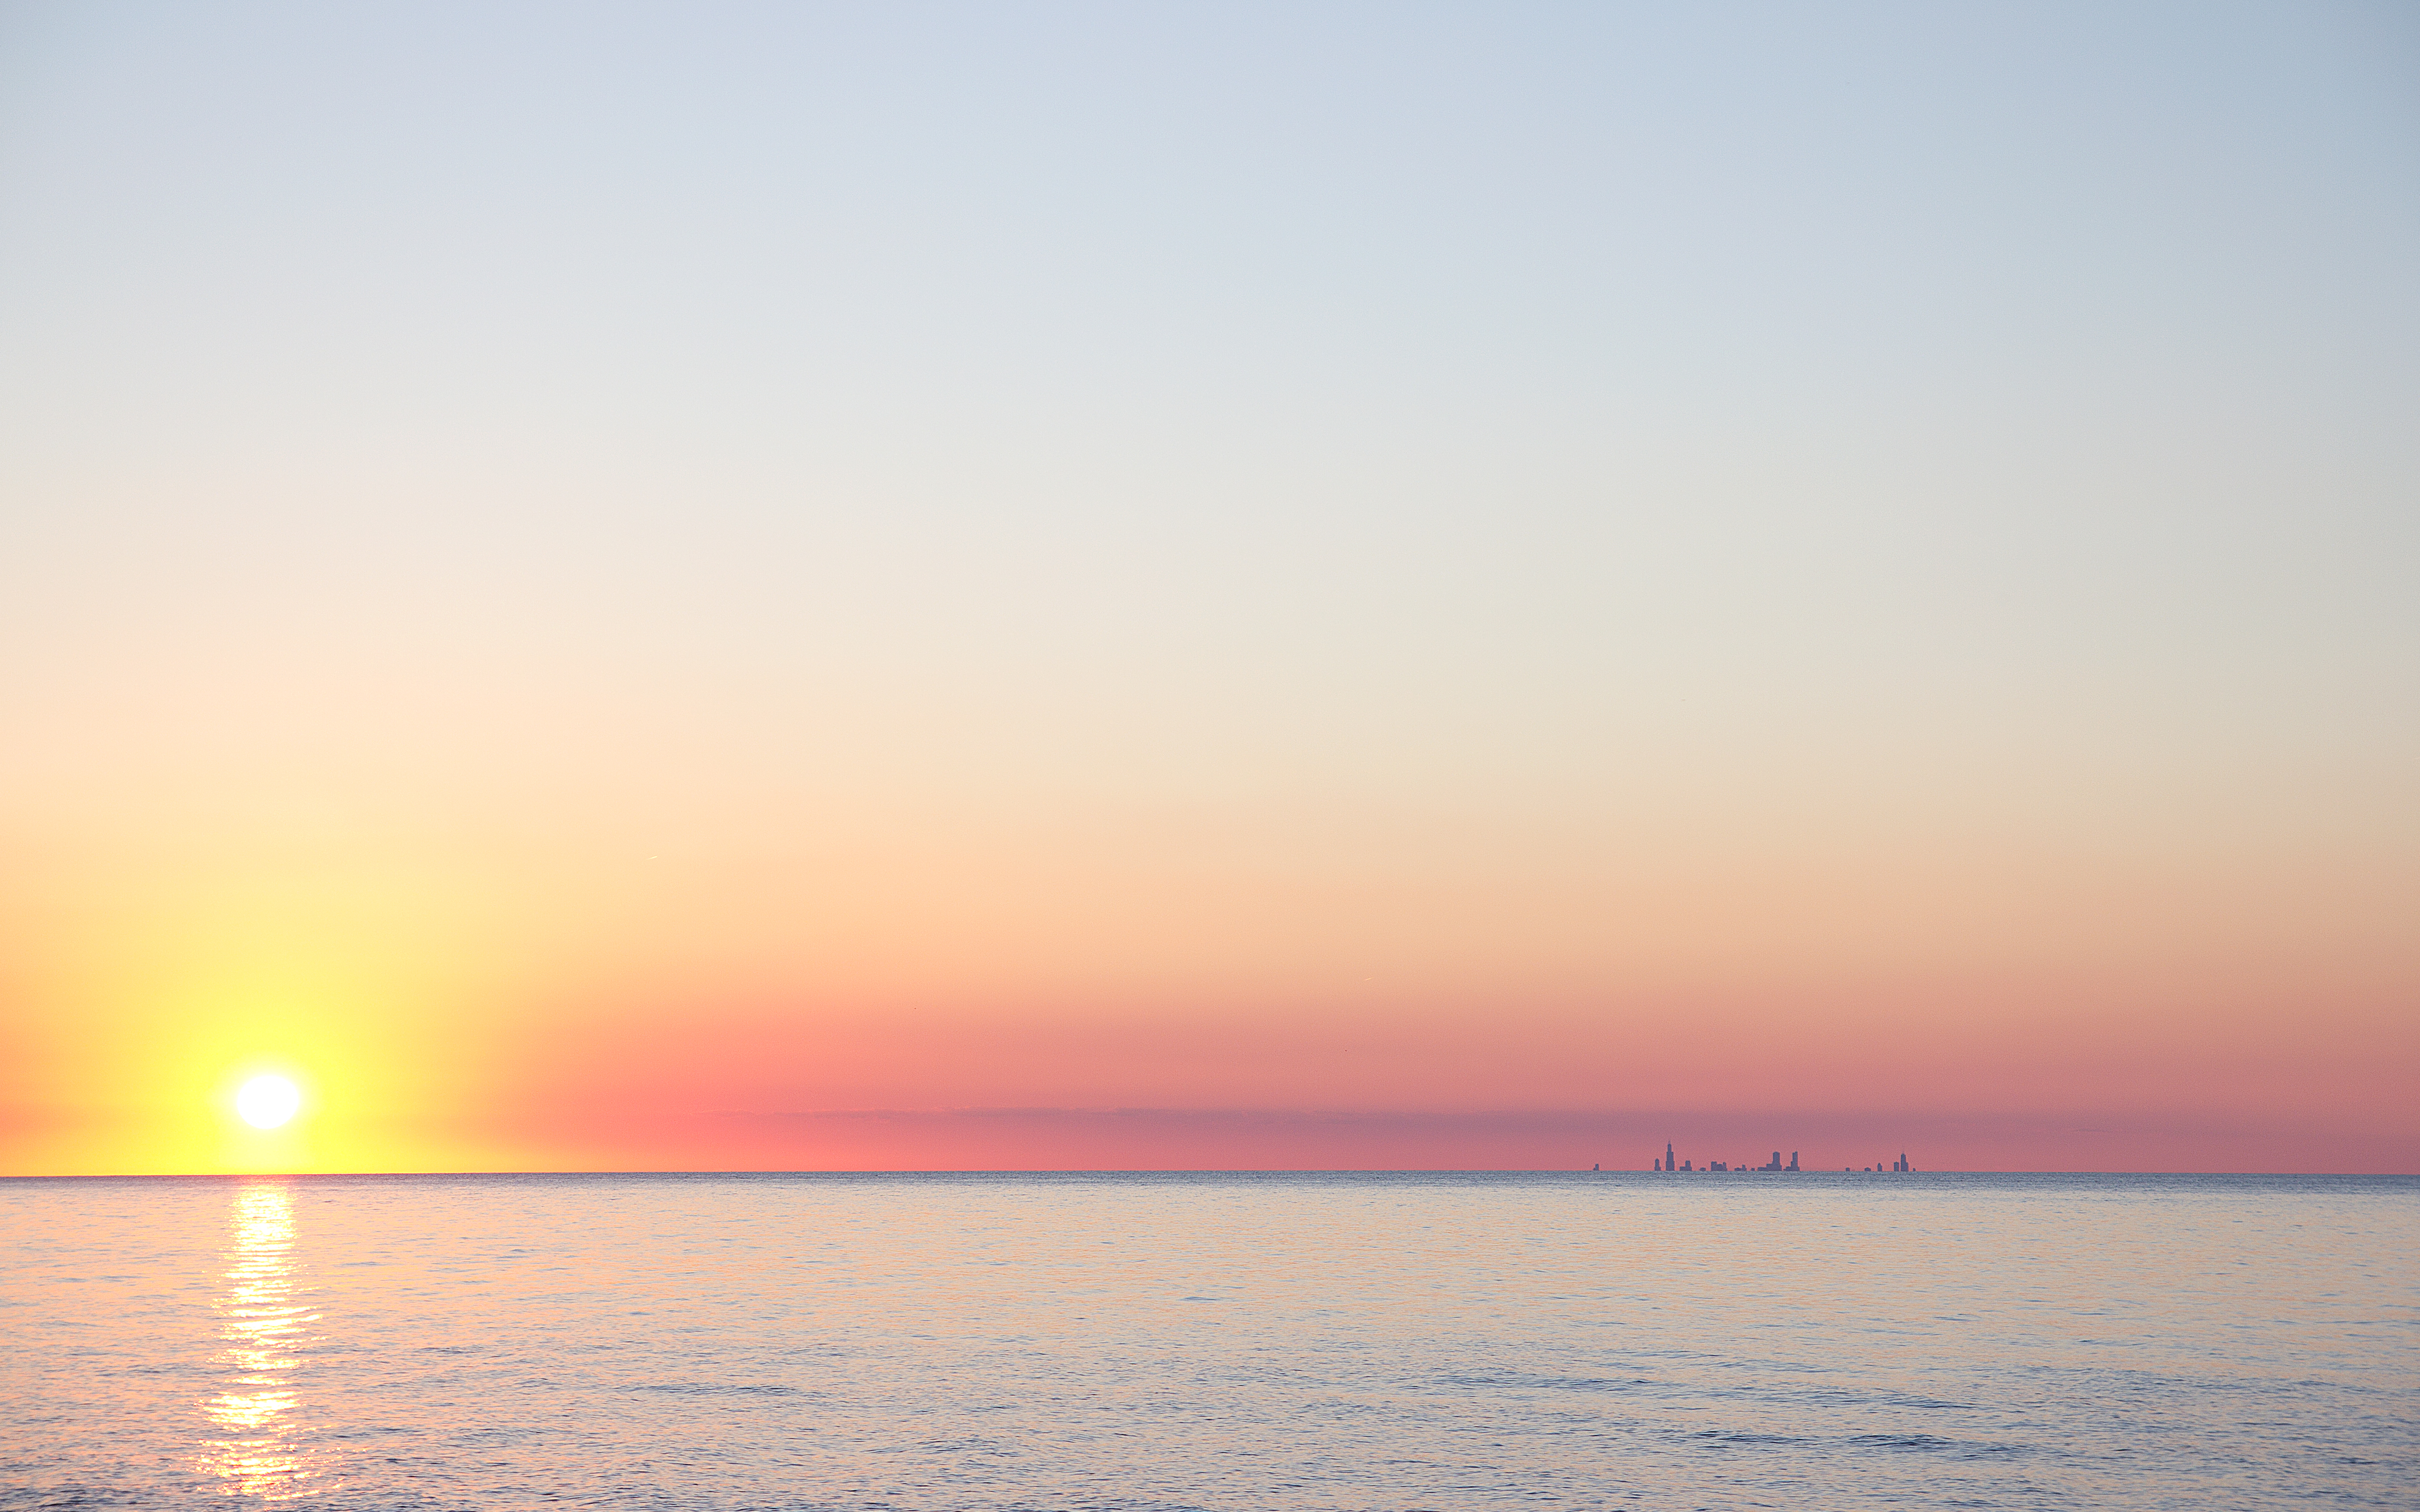 Sea Sunset Horizon Dusk 5120x3200